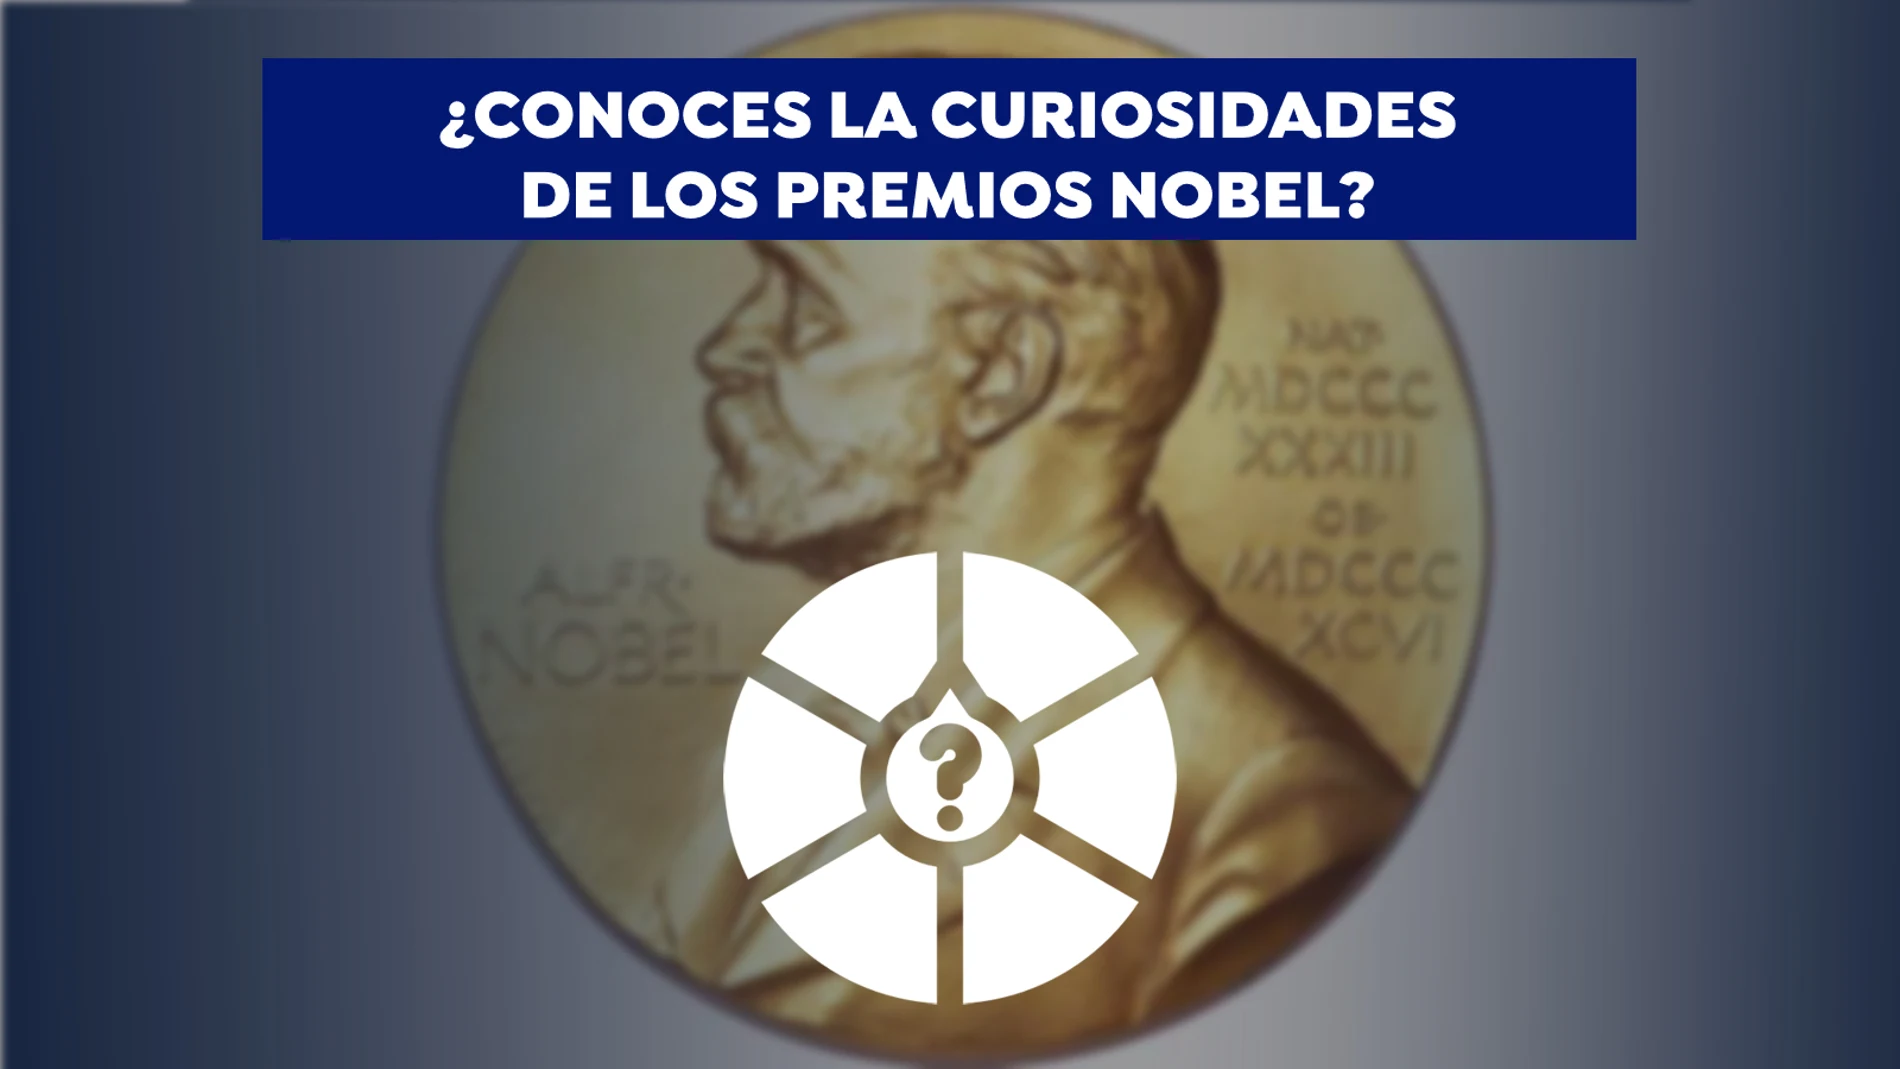 PARTICIPA | Las curiosidades de los Premios Nobel: ¿Cuánto sabes de los premios más prestigiosos del mundo?